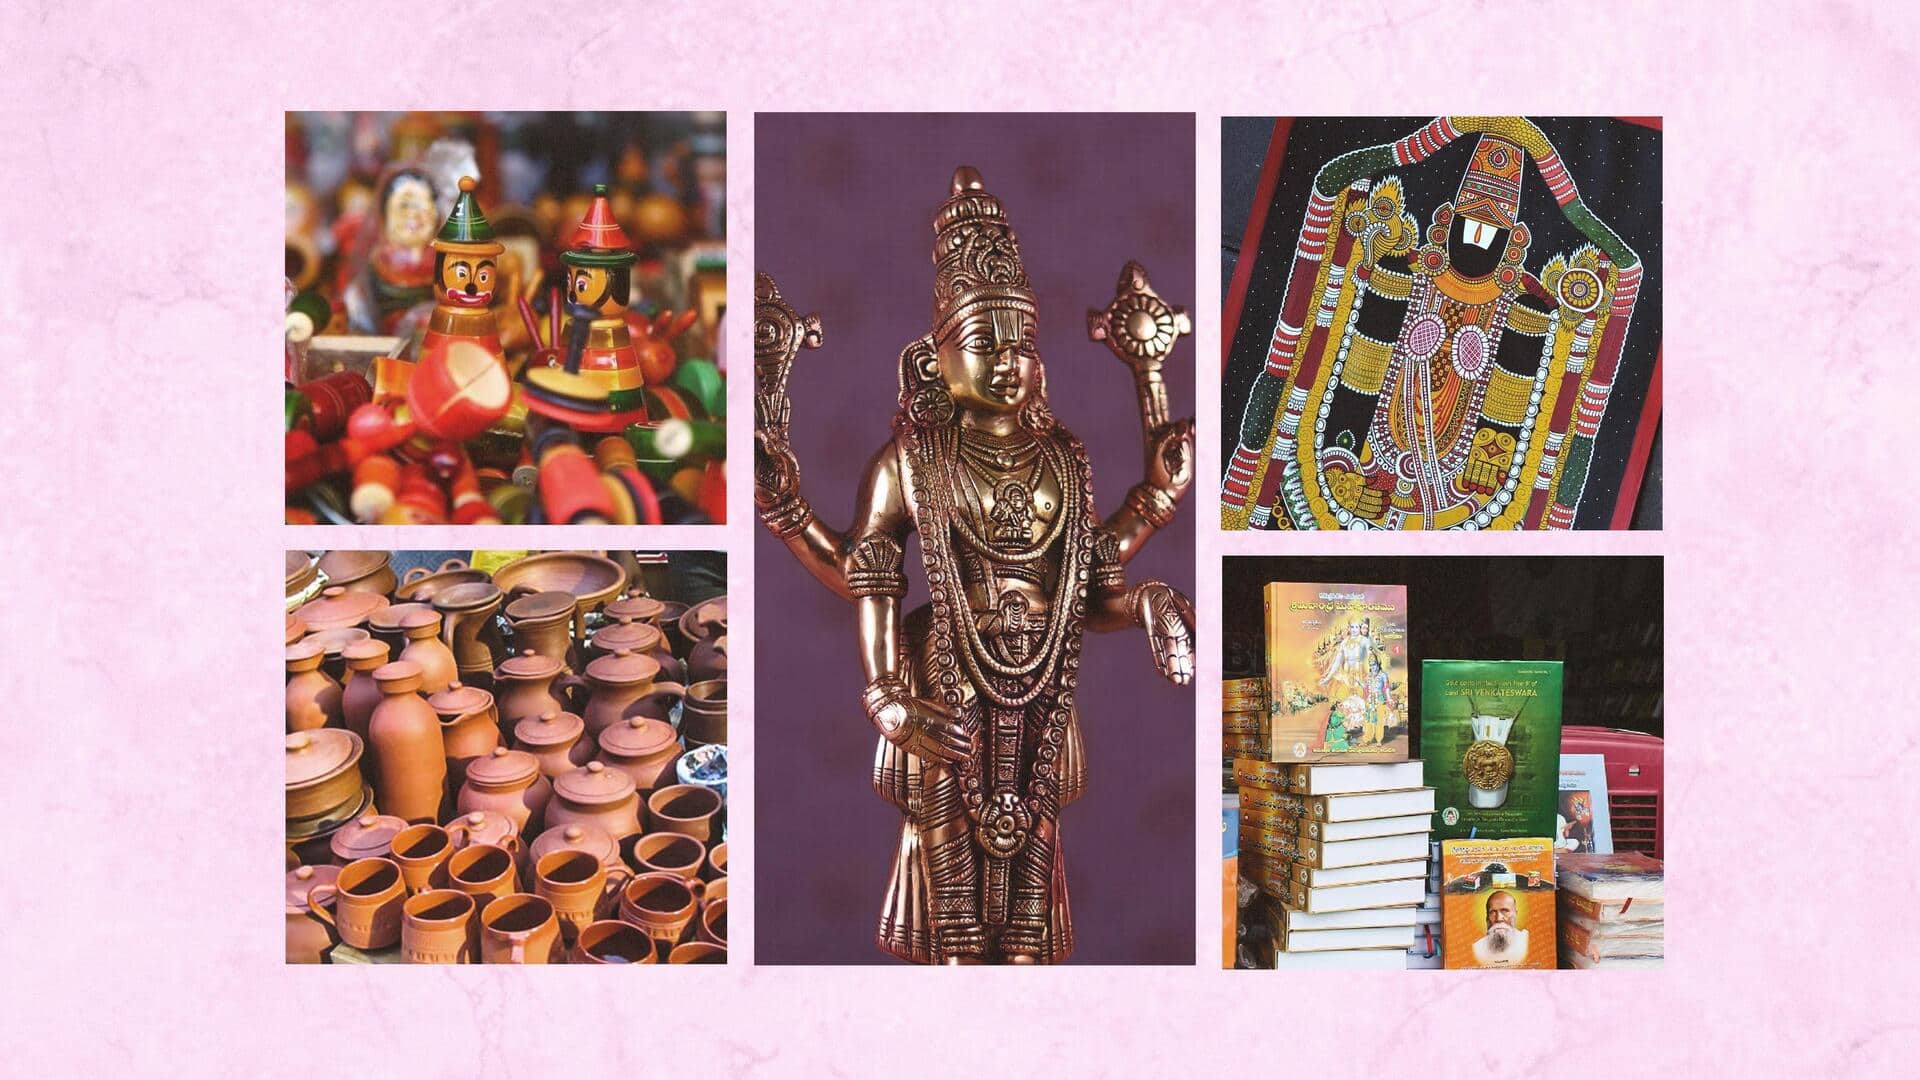 Tirupati's best souvenirs to take home